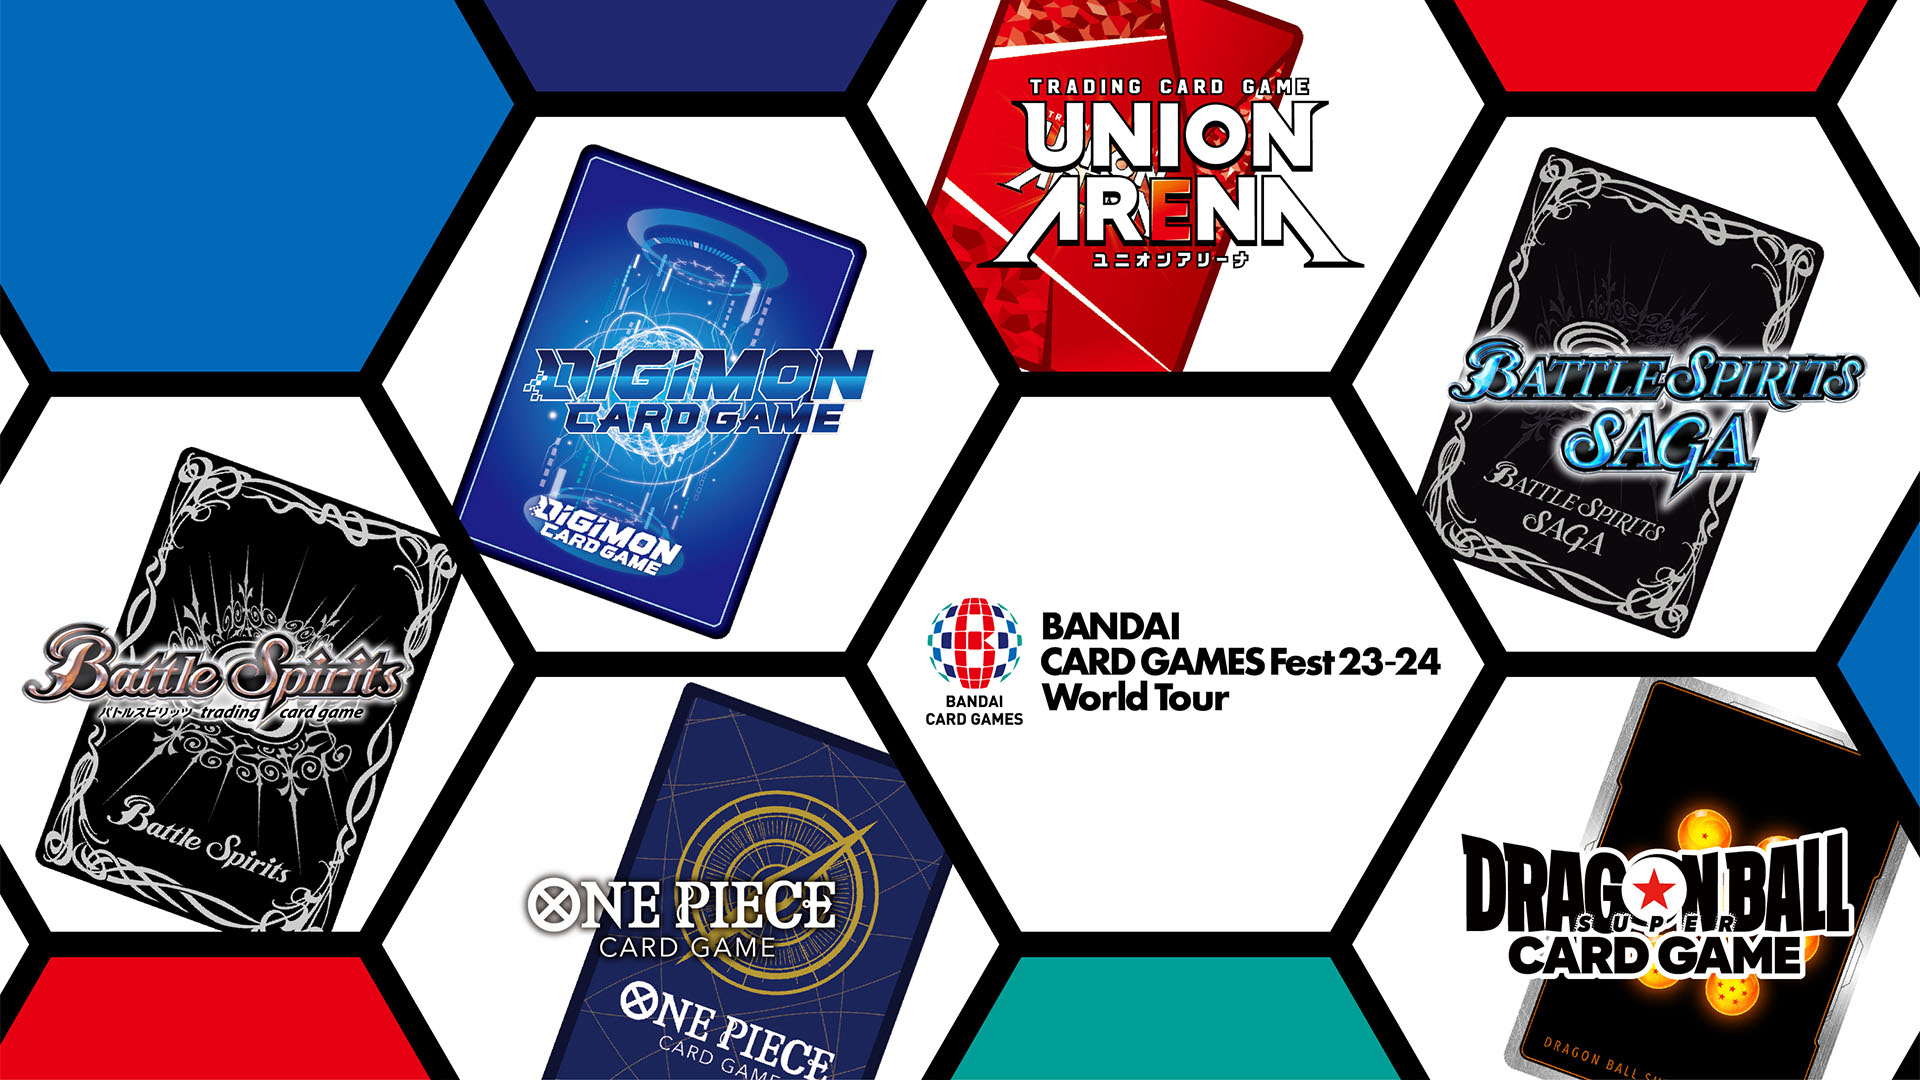 BANDAI CARD GAMES Fest. 23-24 World Tour